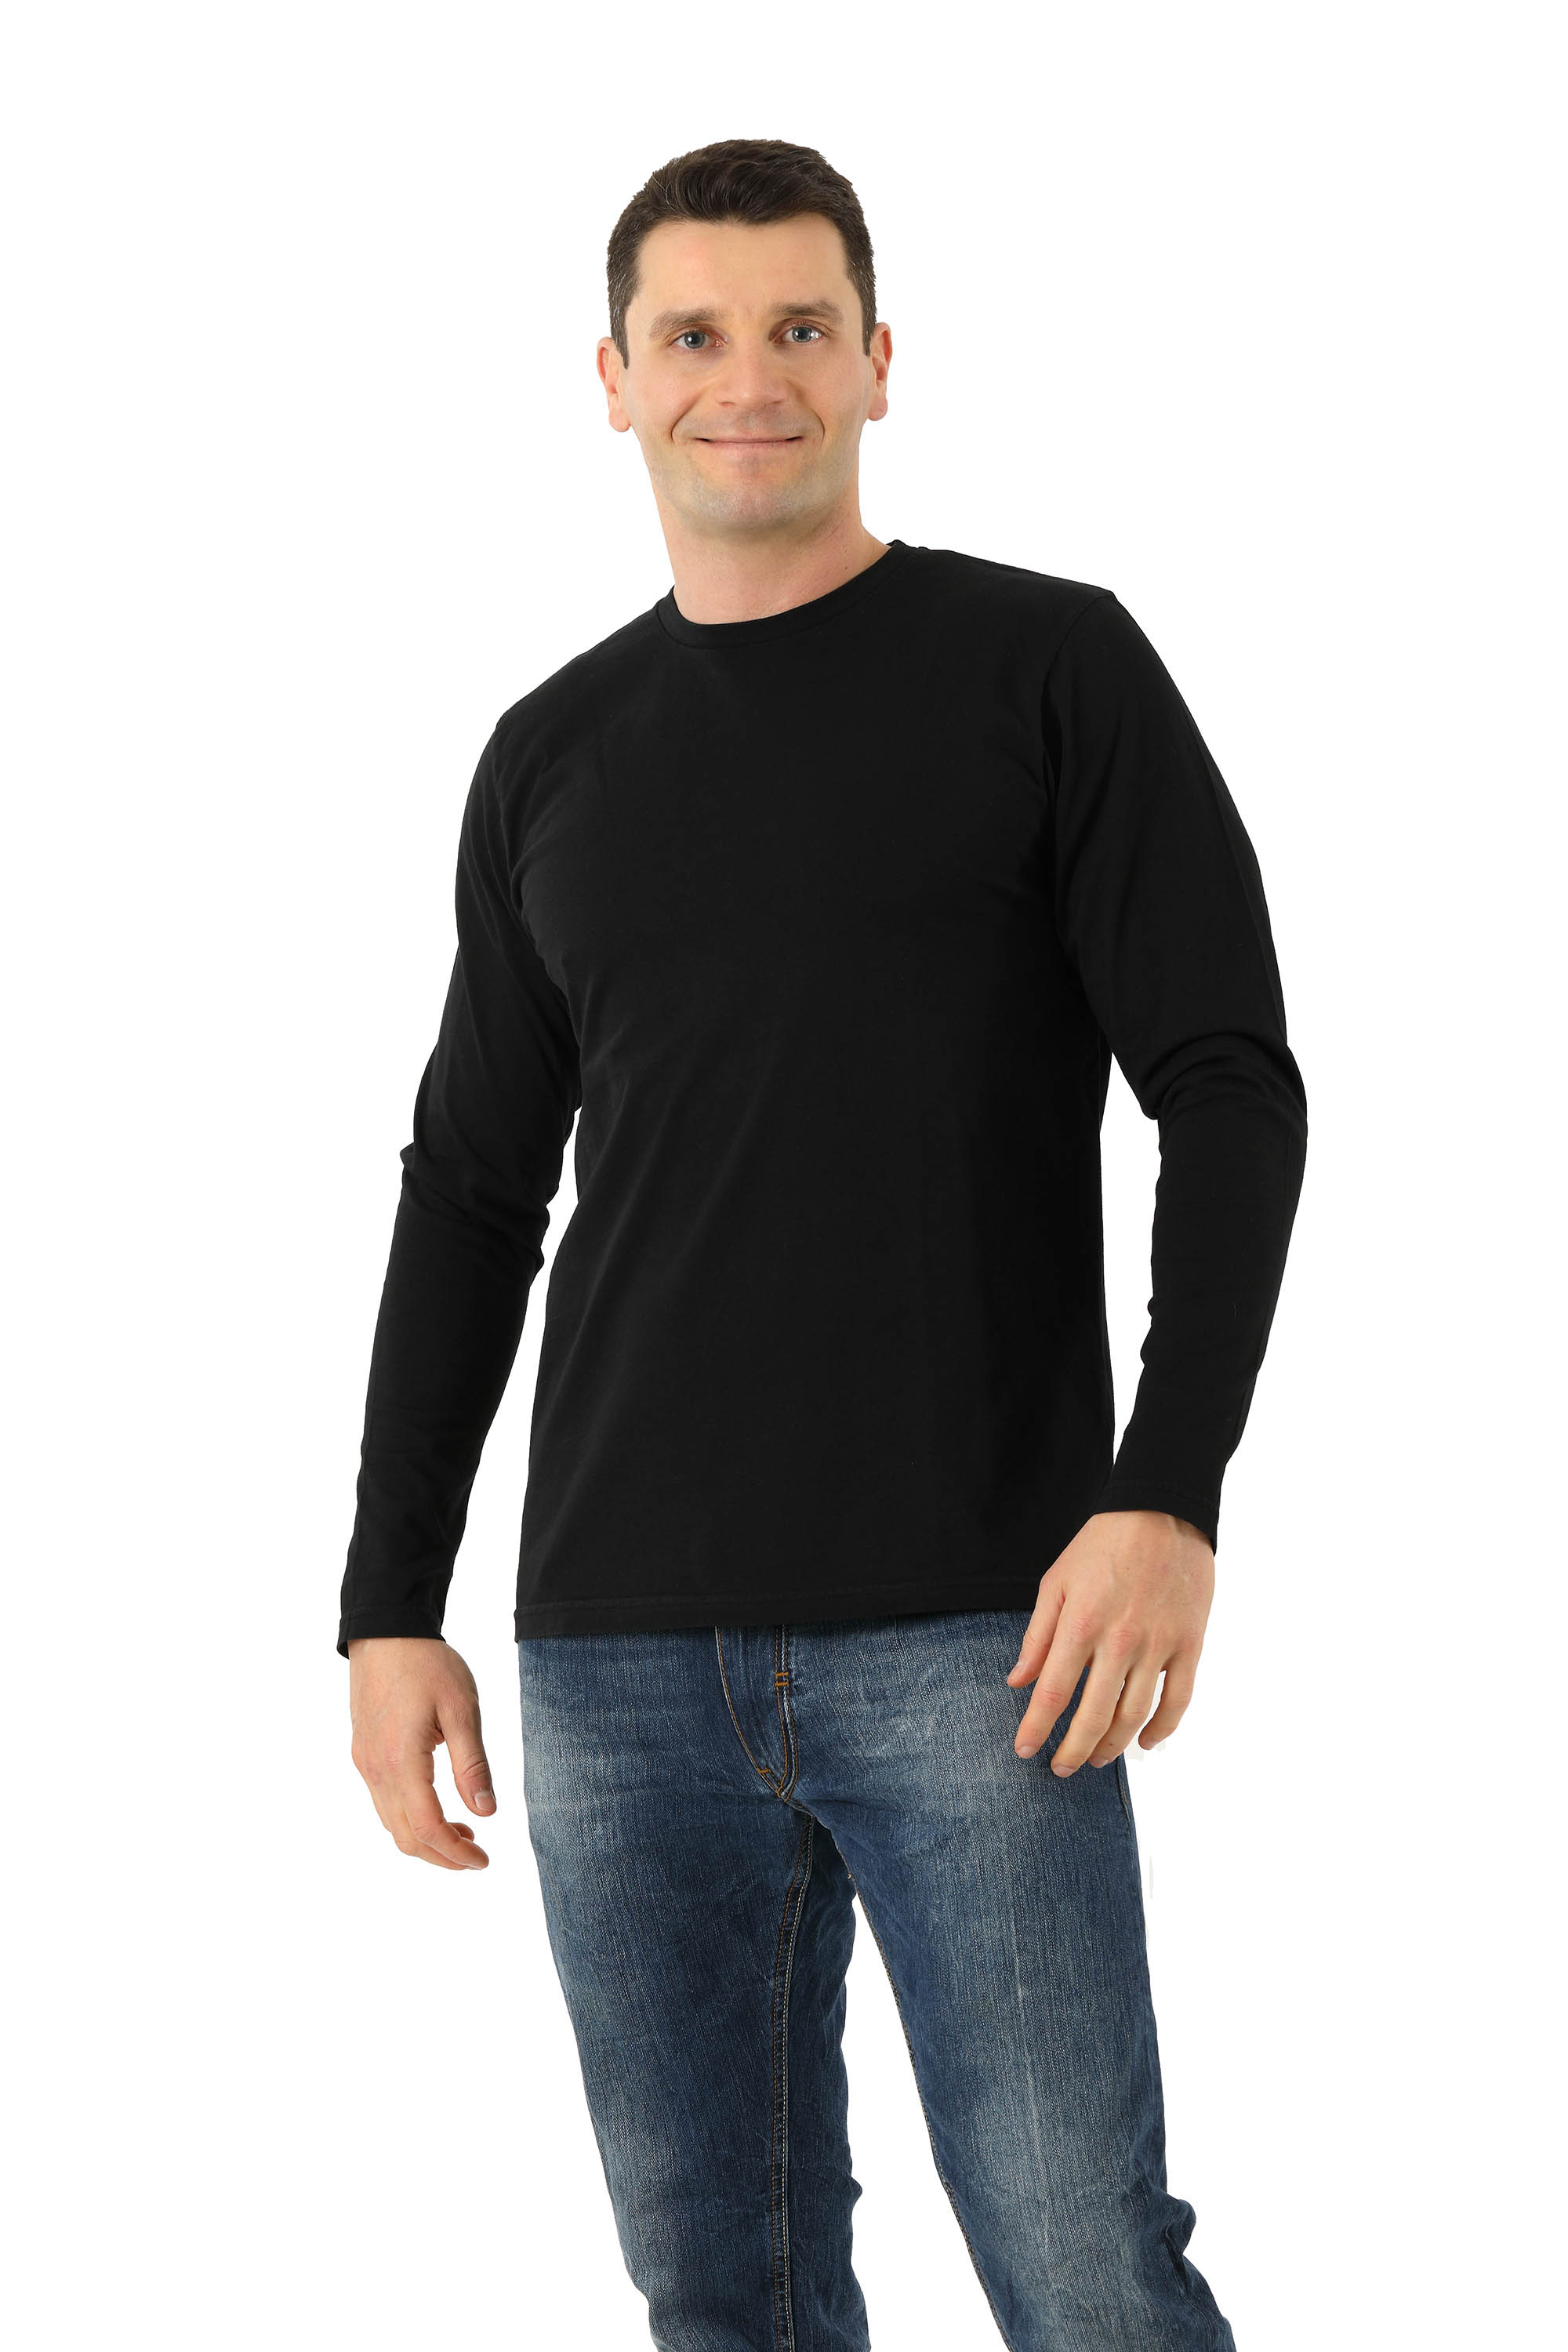 T-shirt manches Longues 100% Bio Noir - Fin de Serie - Vêtements